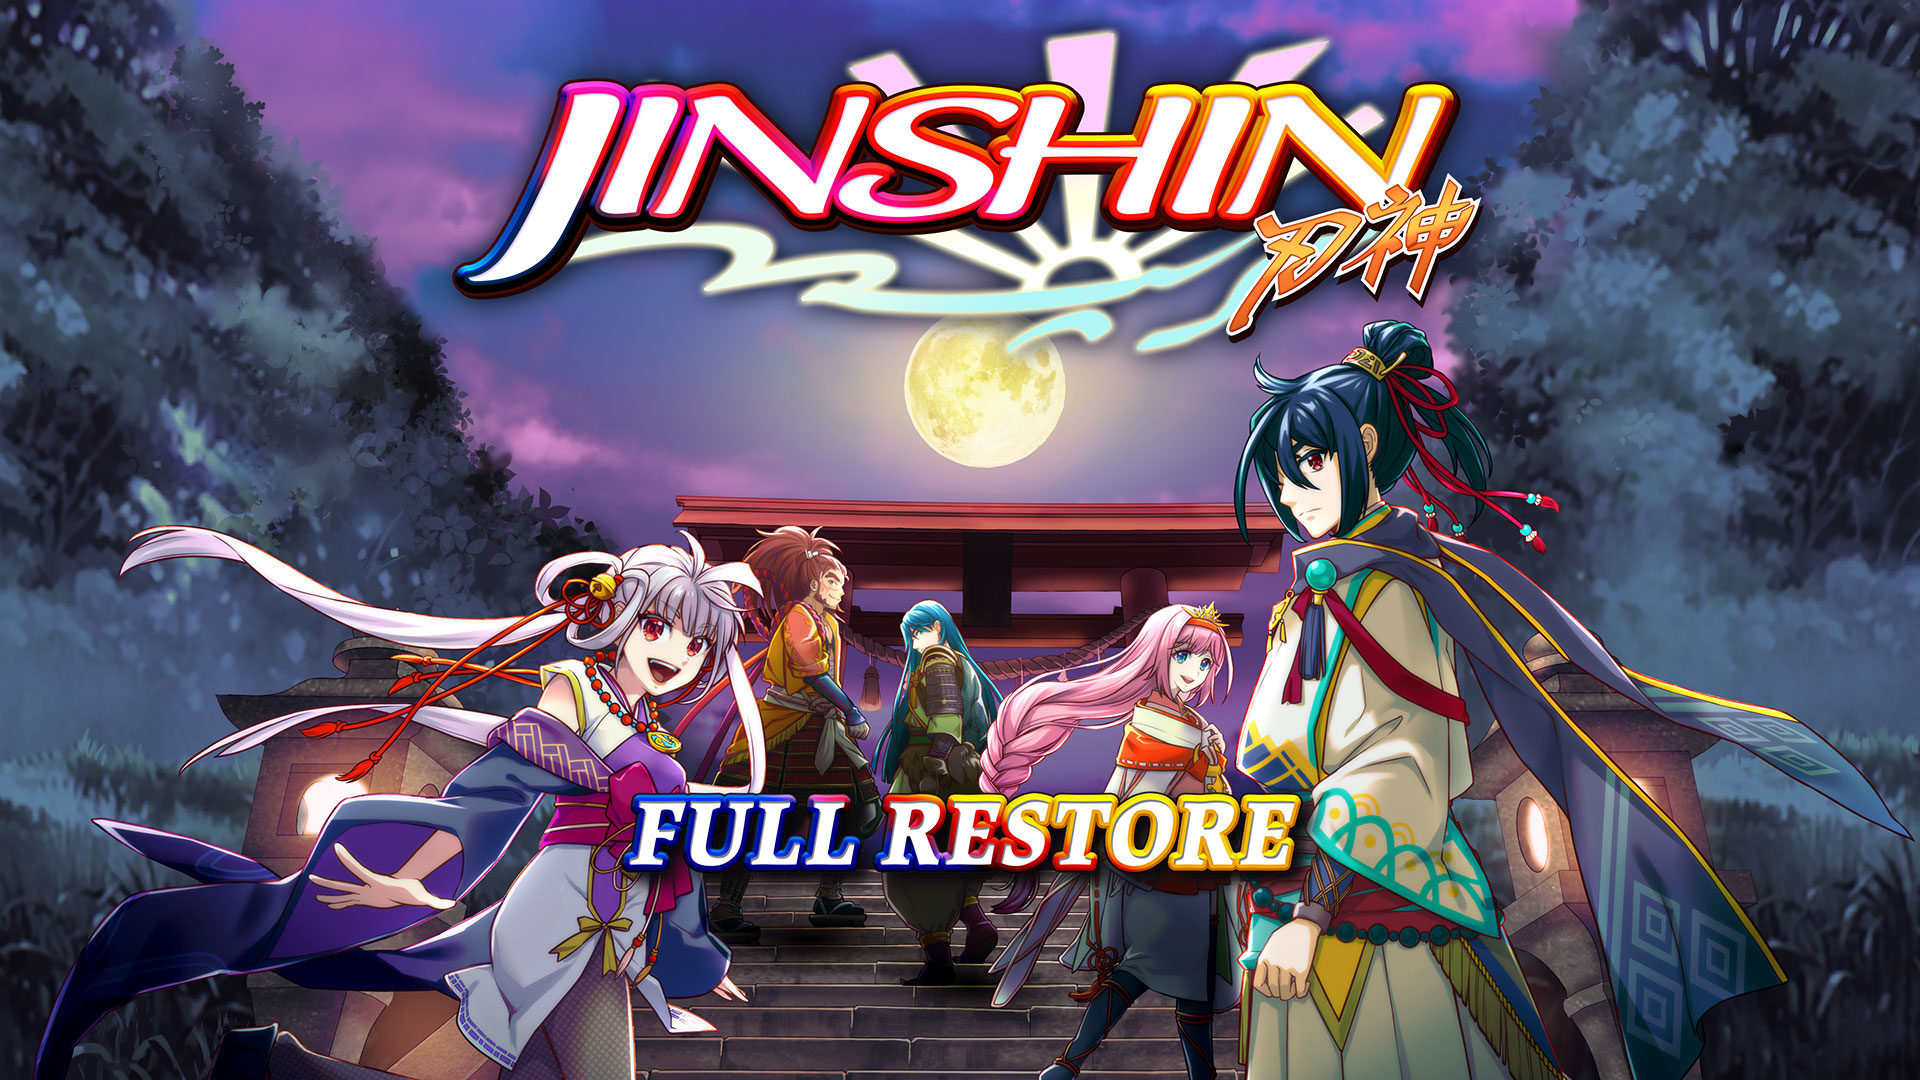 Full Restore - Jinshin